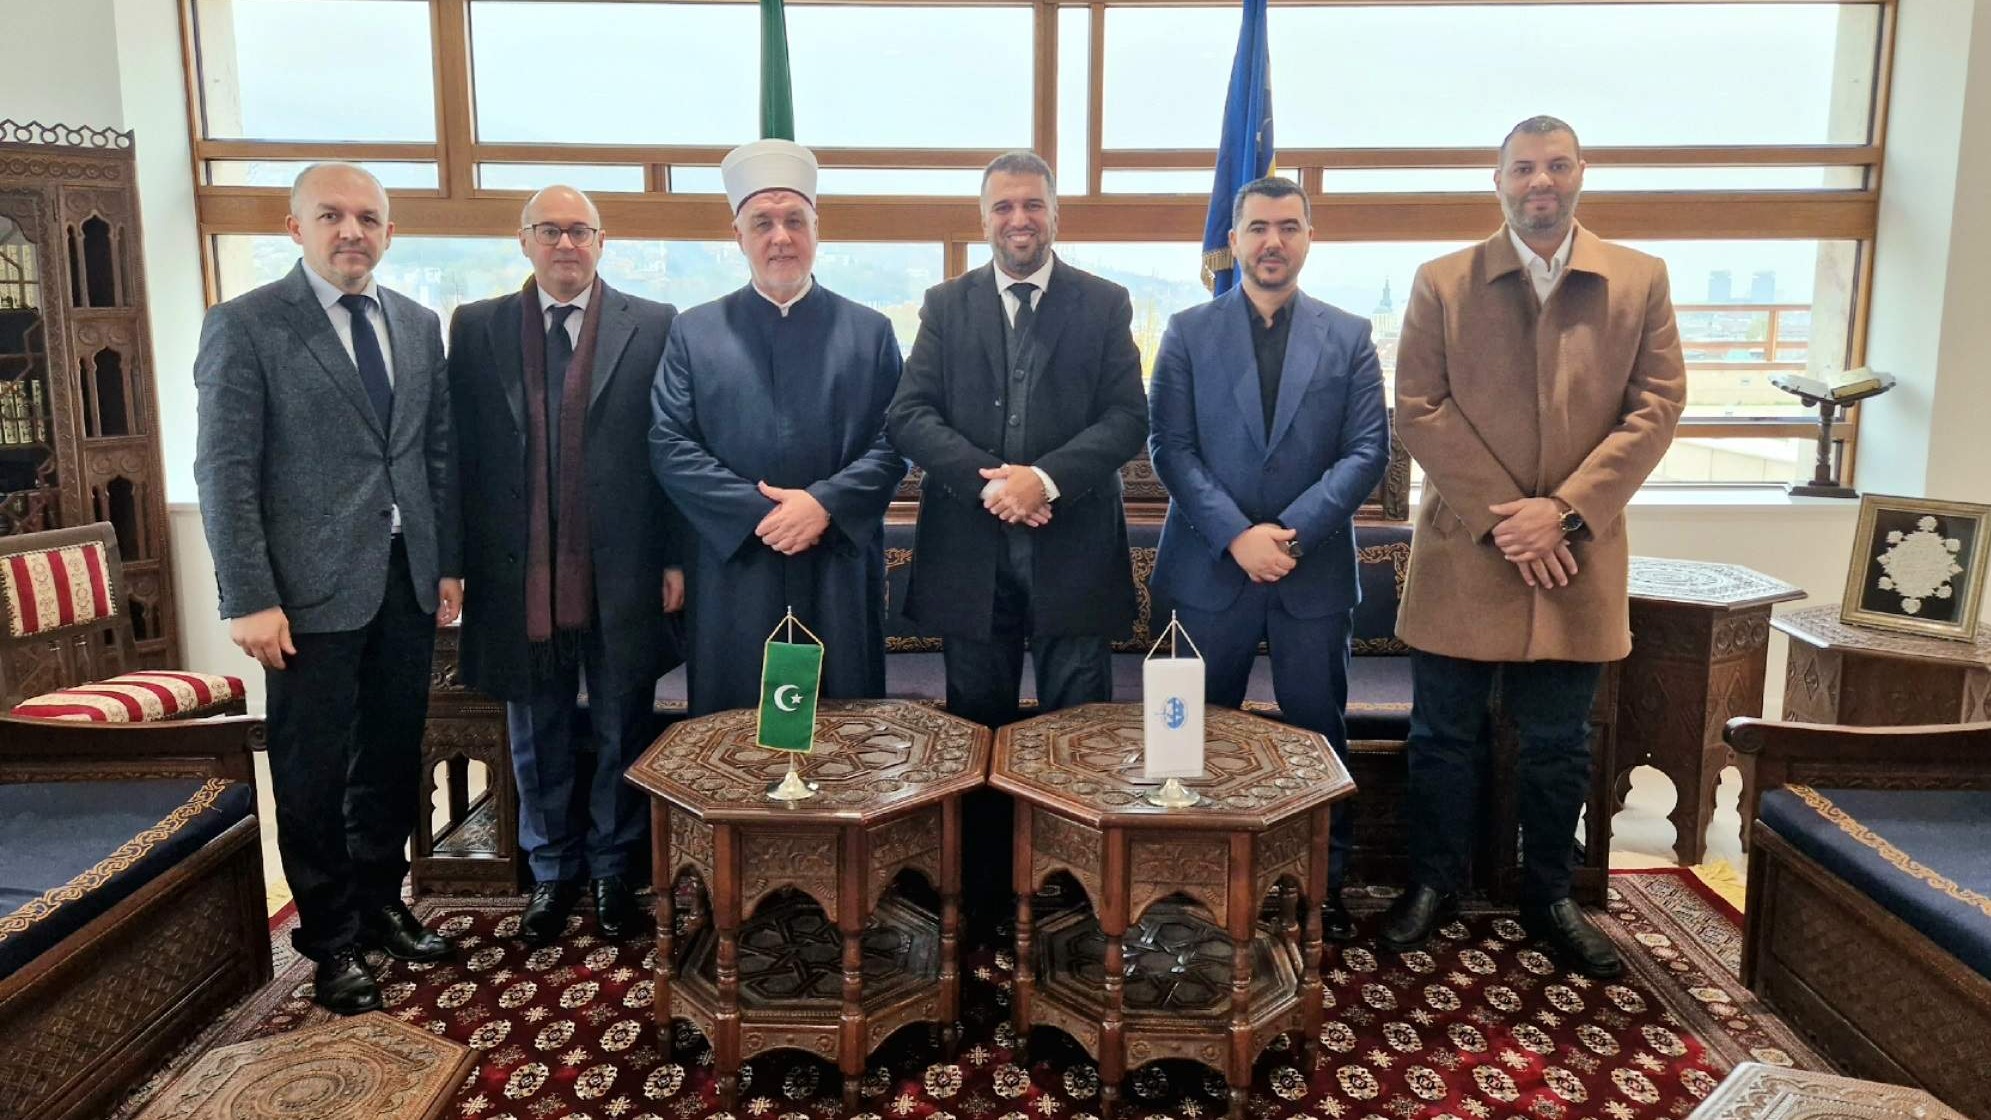 Reisul-ulemu posjetila delegacija Svjetske islamske asocijacije za da'vu 